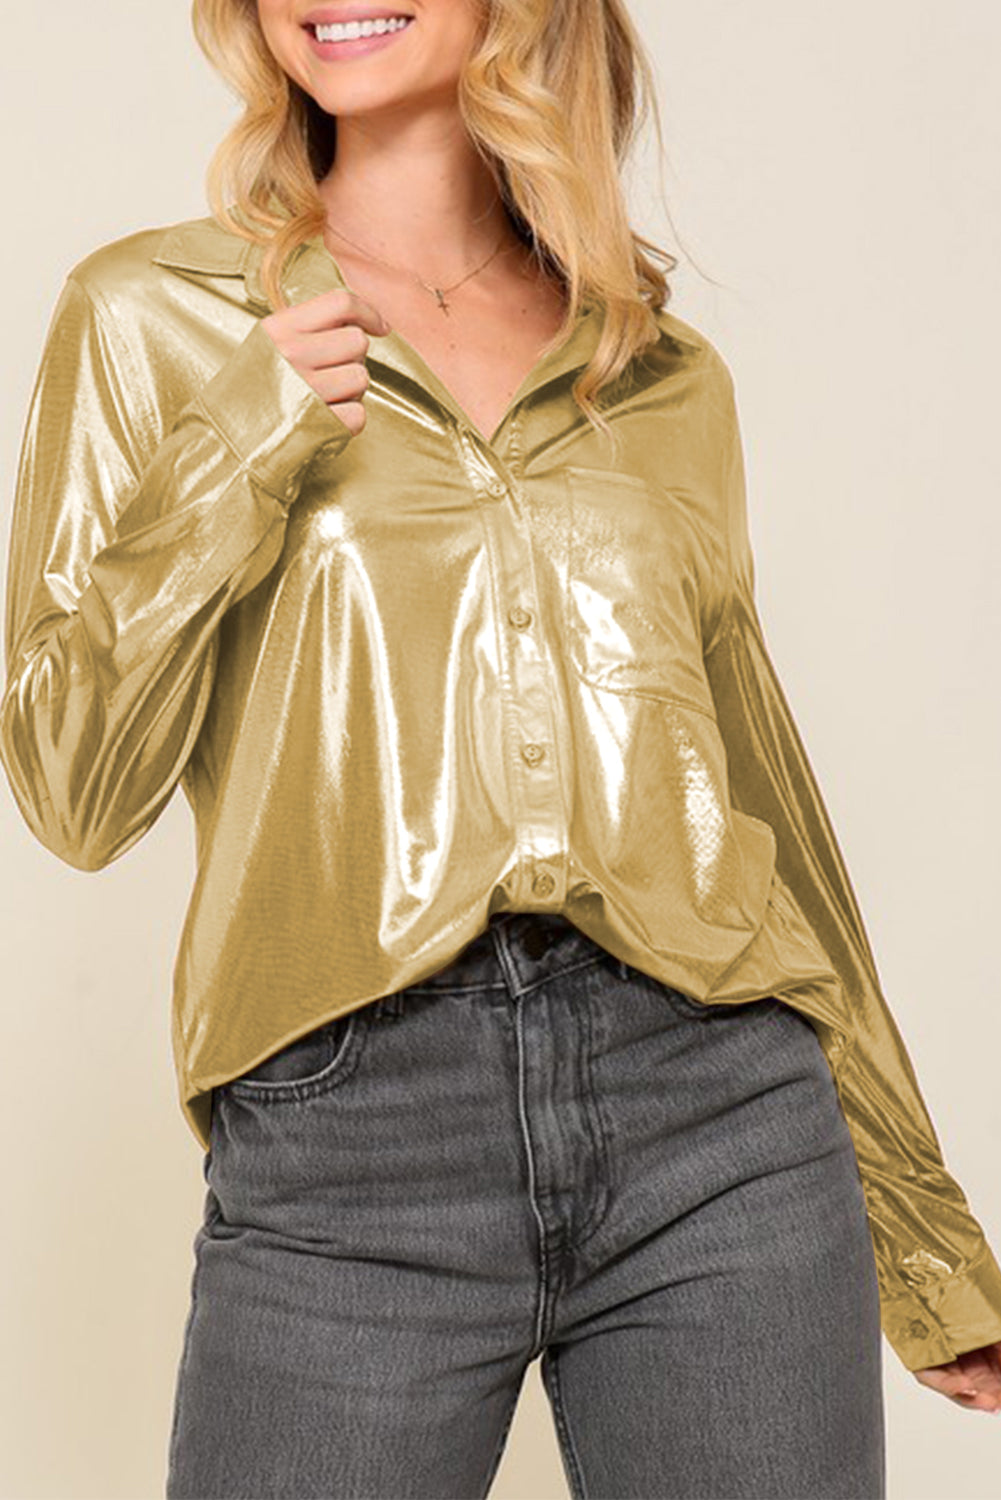 Camicia con taschino sul petto in oro metallizzato lucido